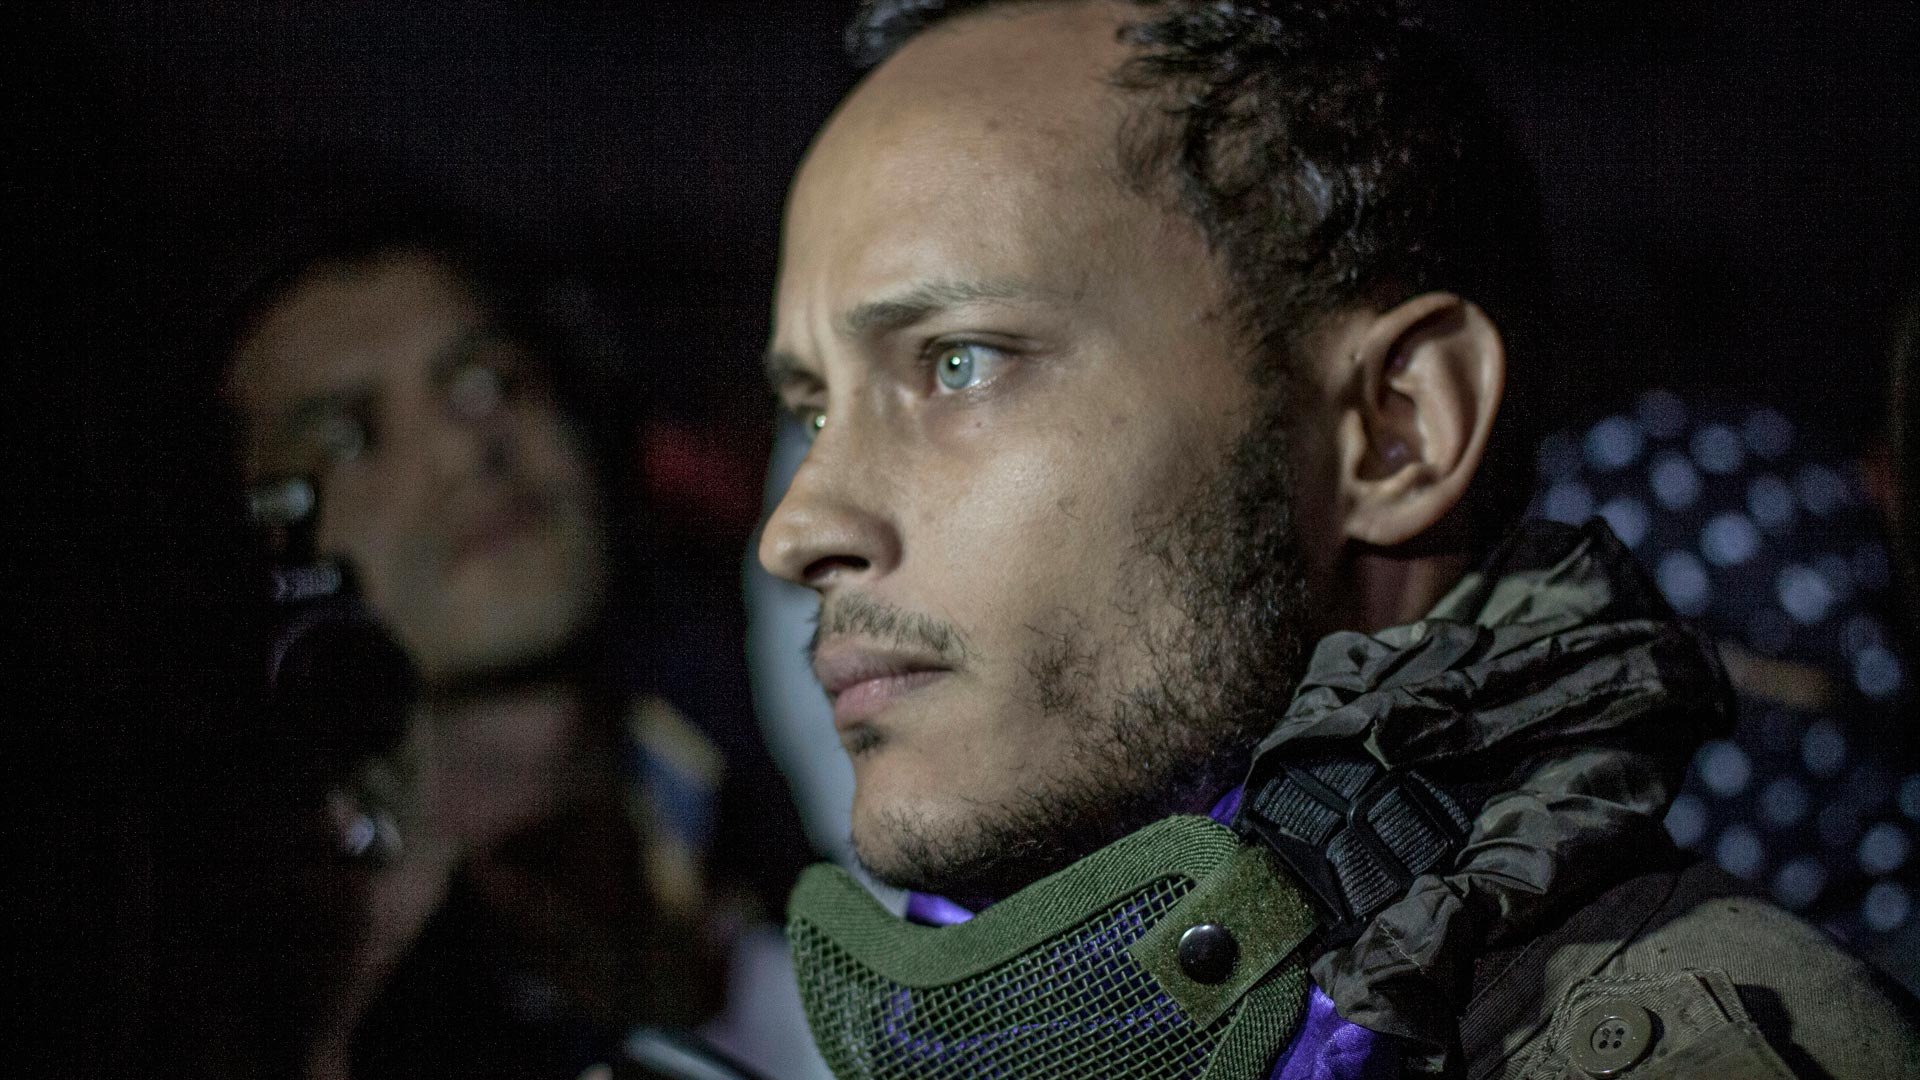 El piloto acusado de terrorismo en Venezuela aparece en una marcha opositora